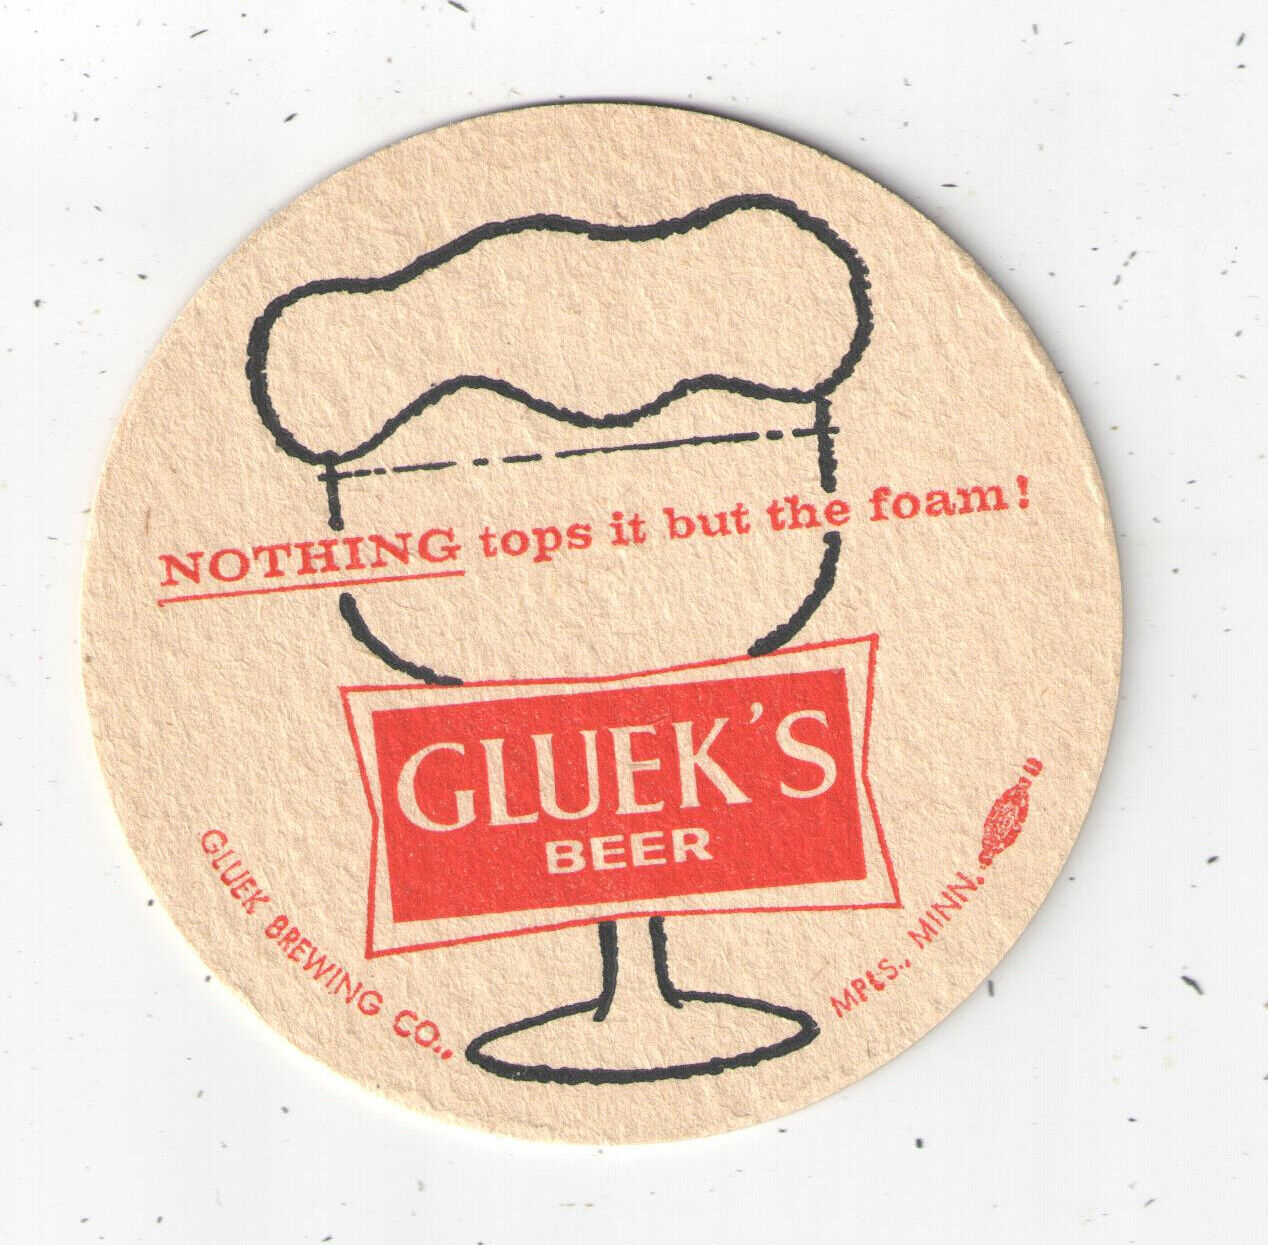 1960s GLUEK'S BEER { NOTHING TOPS IT BUT THE FOAM } UNUSED COASTER 3 1/2